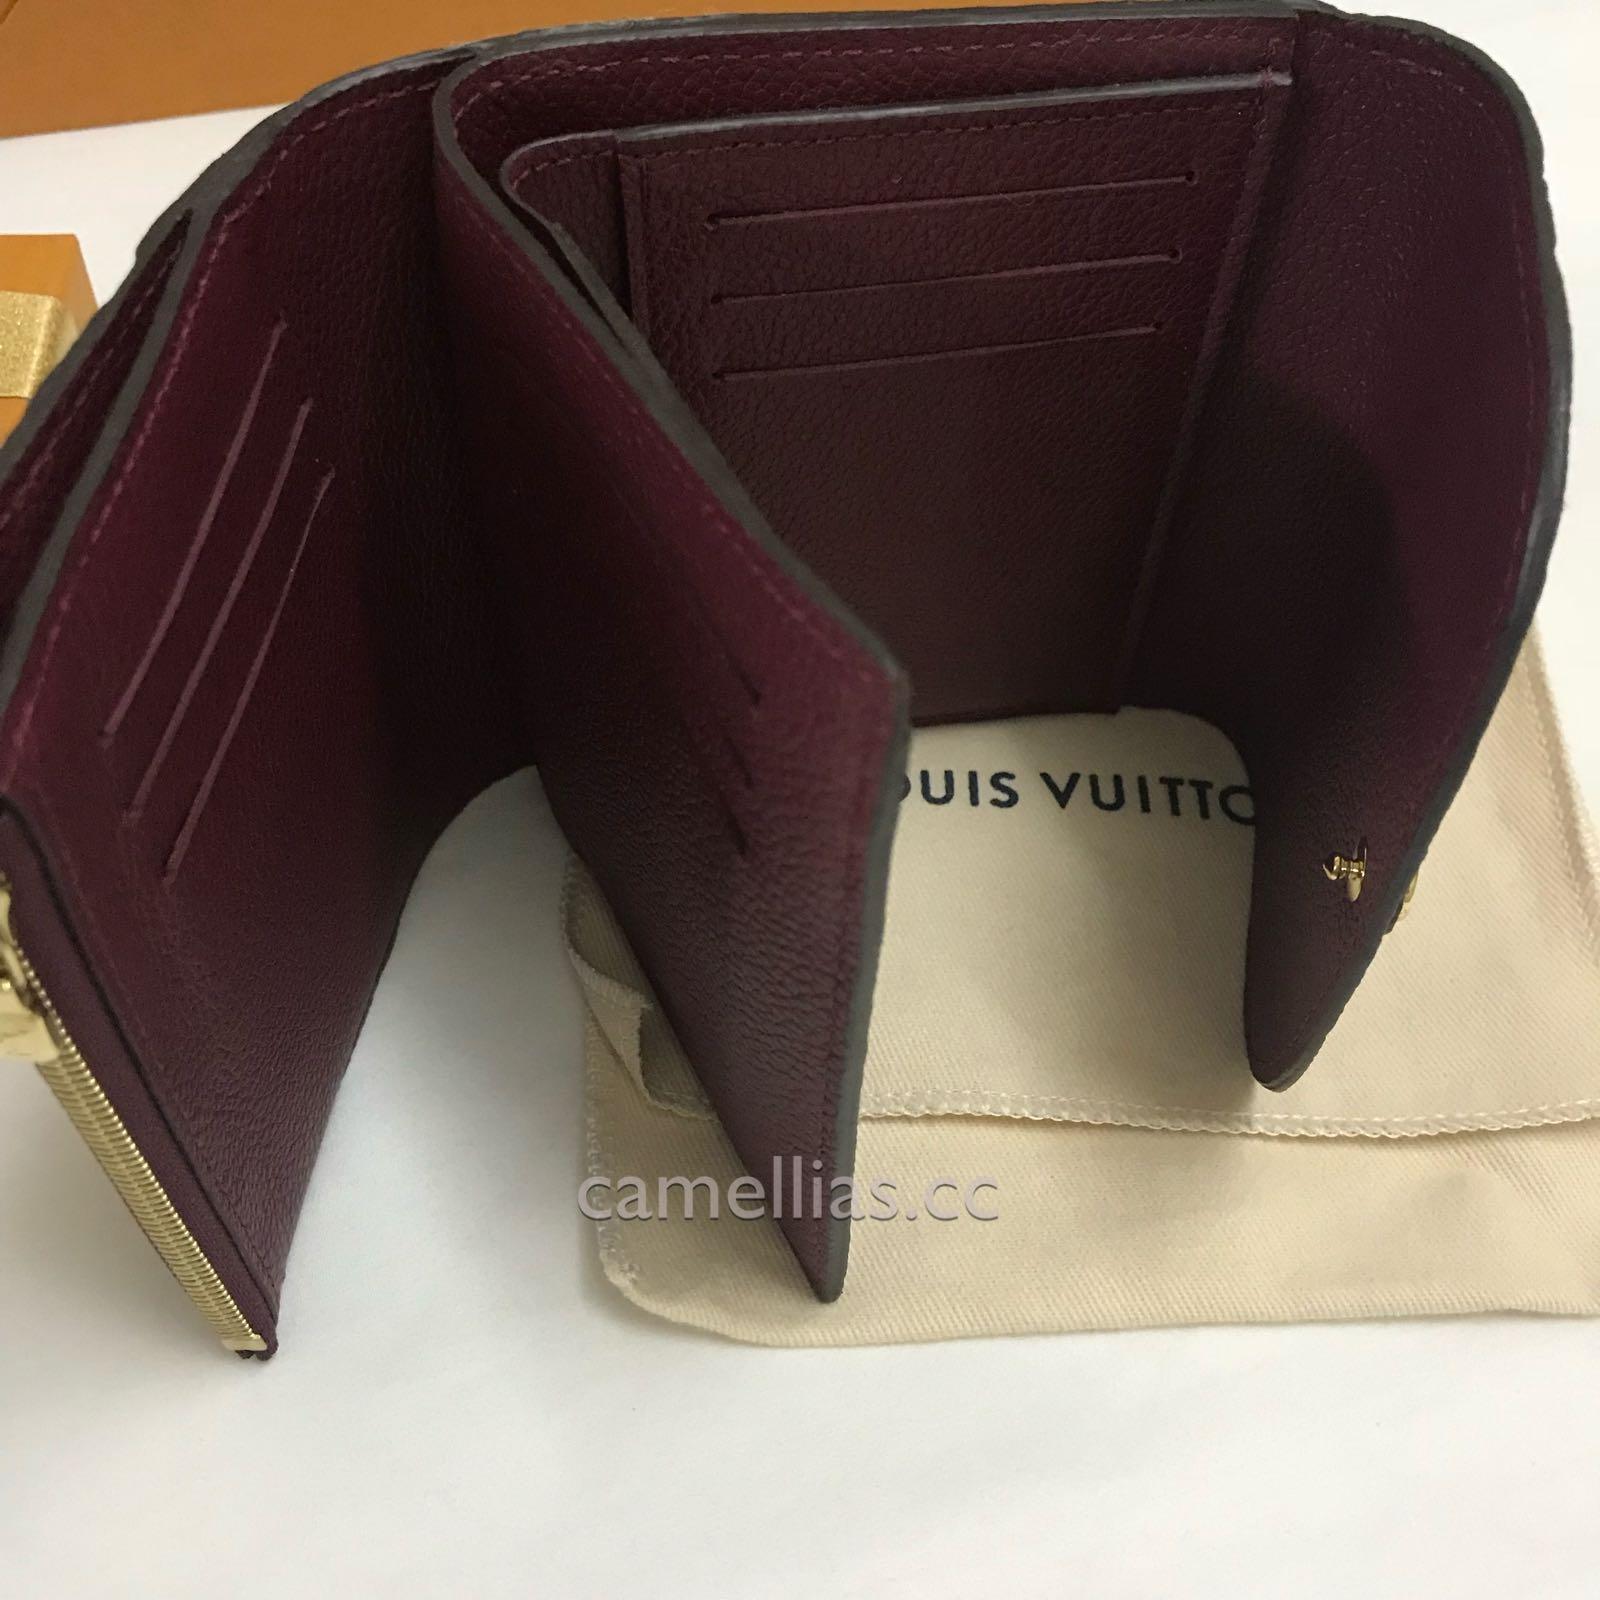 Louis Vuitton, Bags, Rare Guaranteed Authentic Louis Vuitton Ariane  Empreinte Wallet Raisin